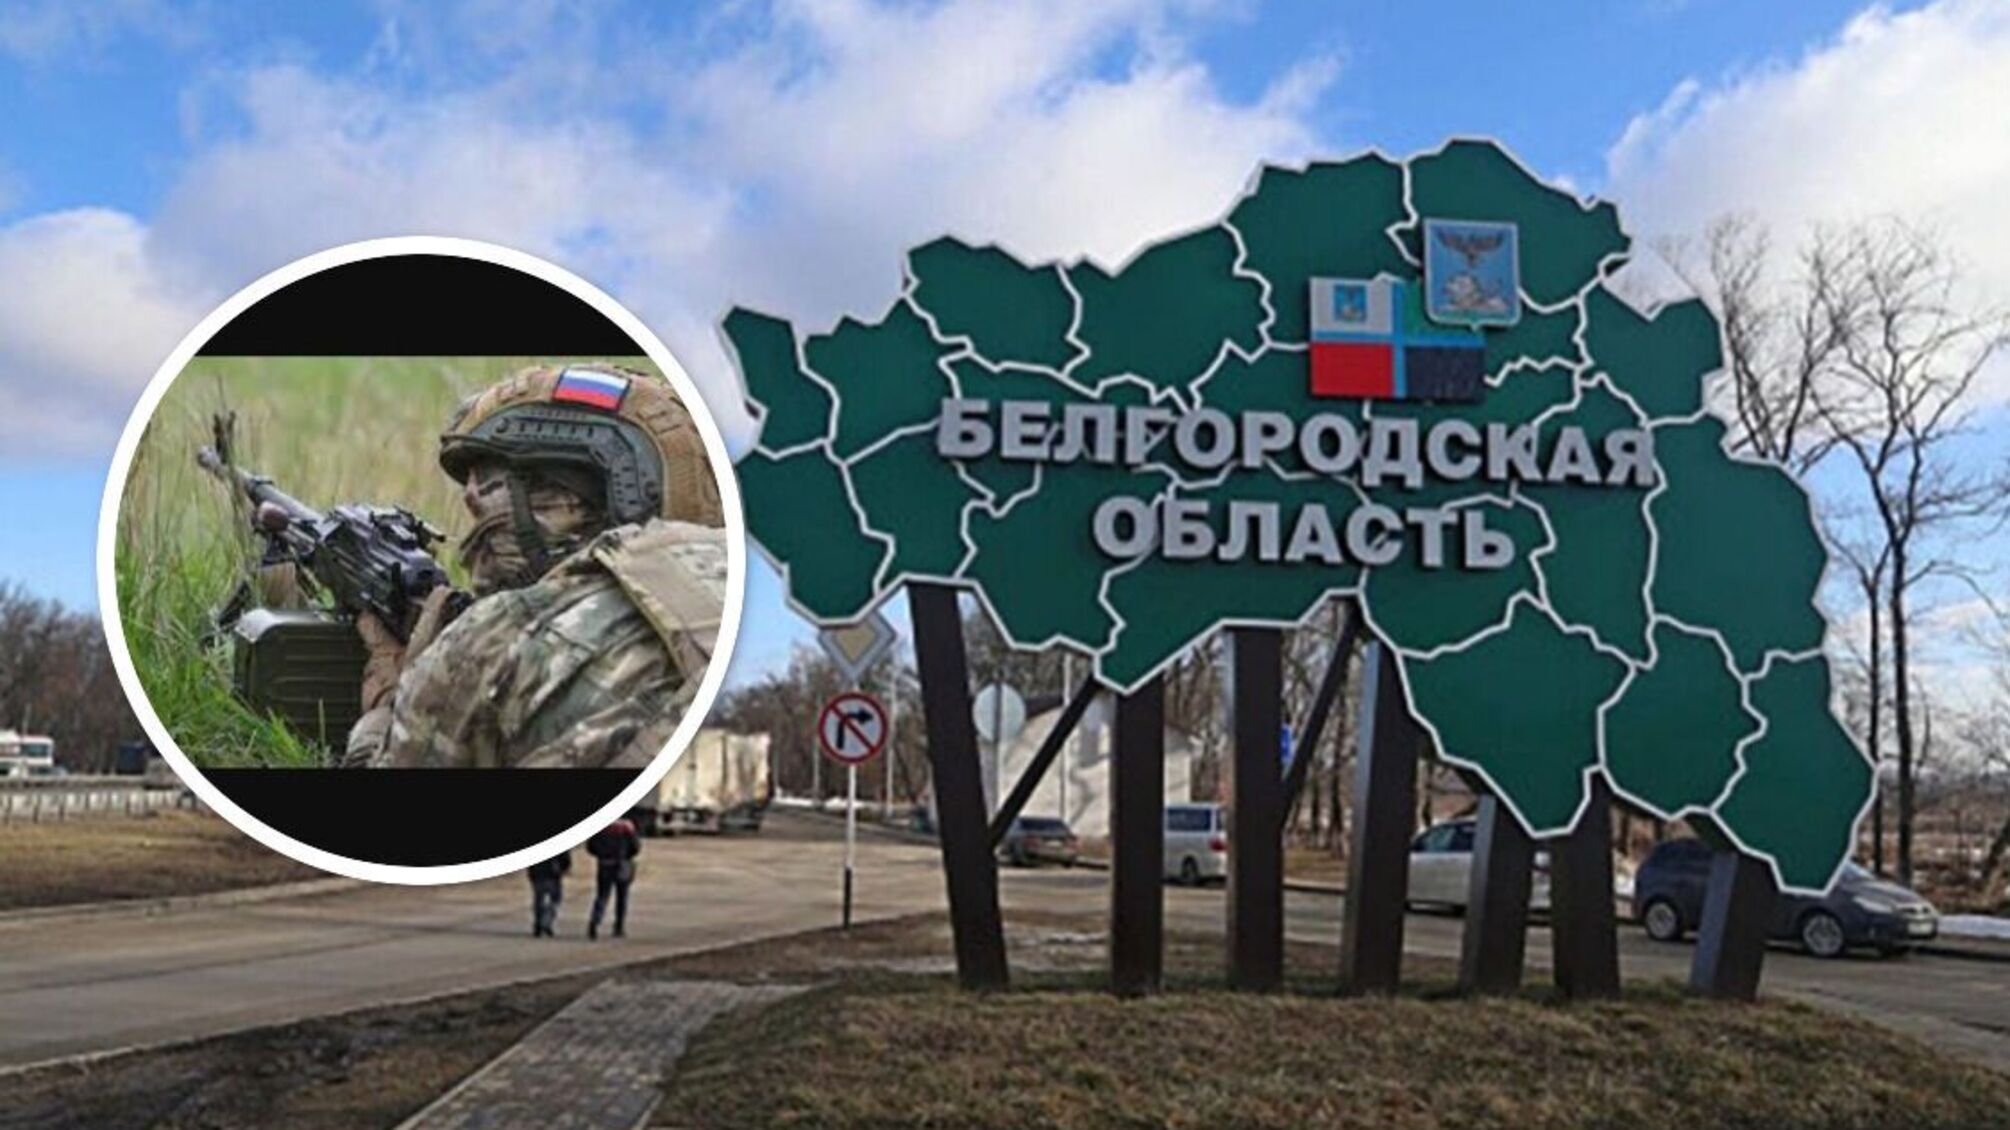 'Прорыв ДРГ' в Белгородской области - версия власти РФ относительно событий на границе